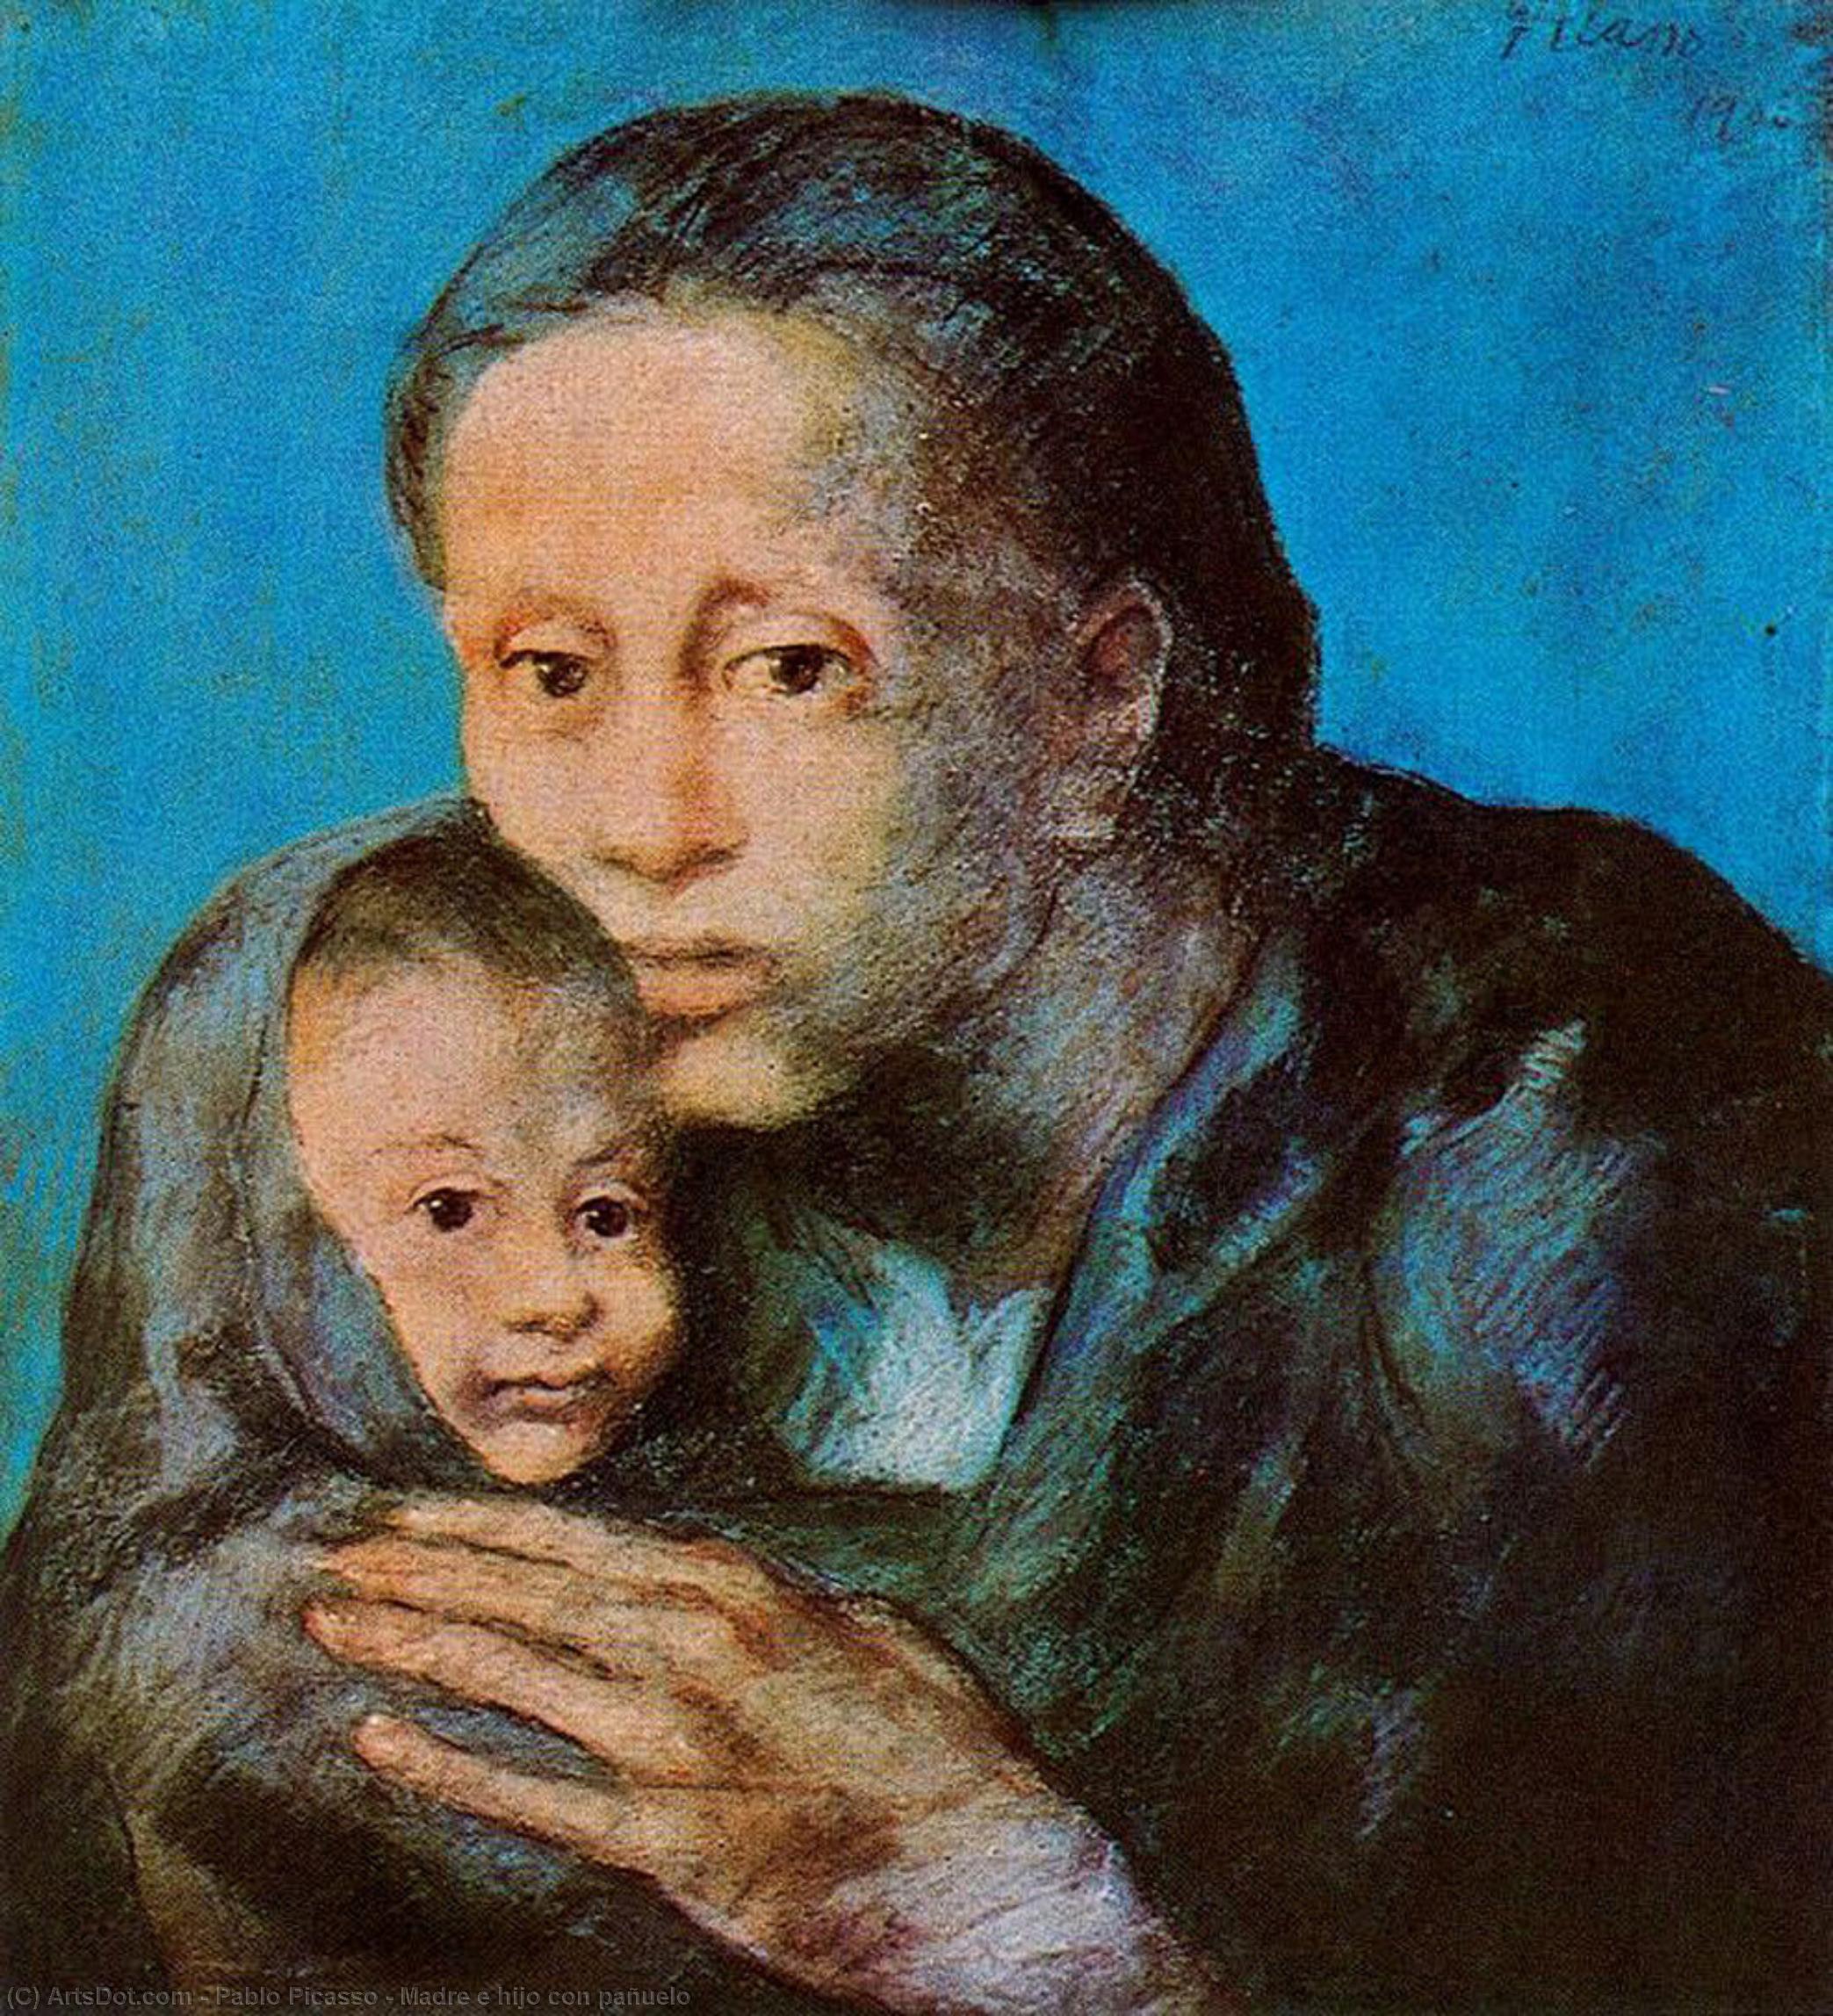 WikiOO.org - Encyclopedia of Fine Arts - Maleri, Artwork Pablo Picasso - Madre e hijo con pañuelo